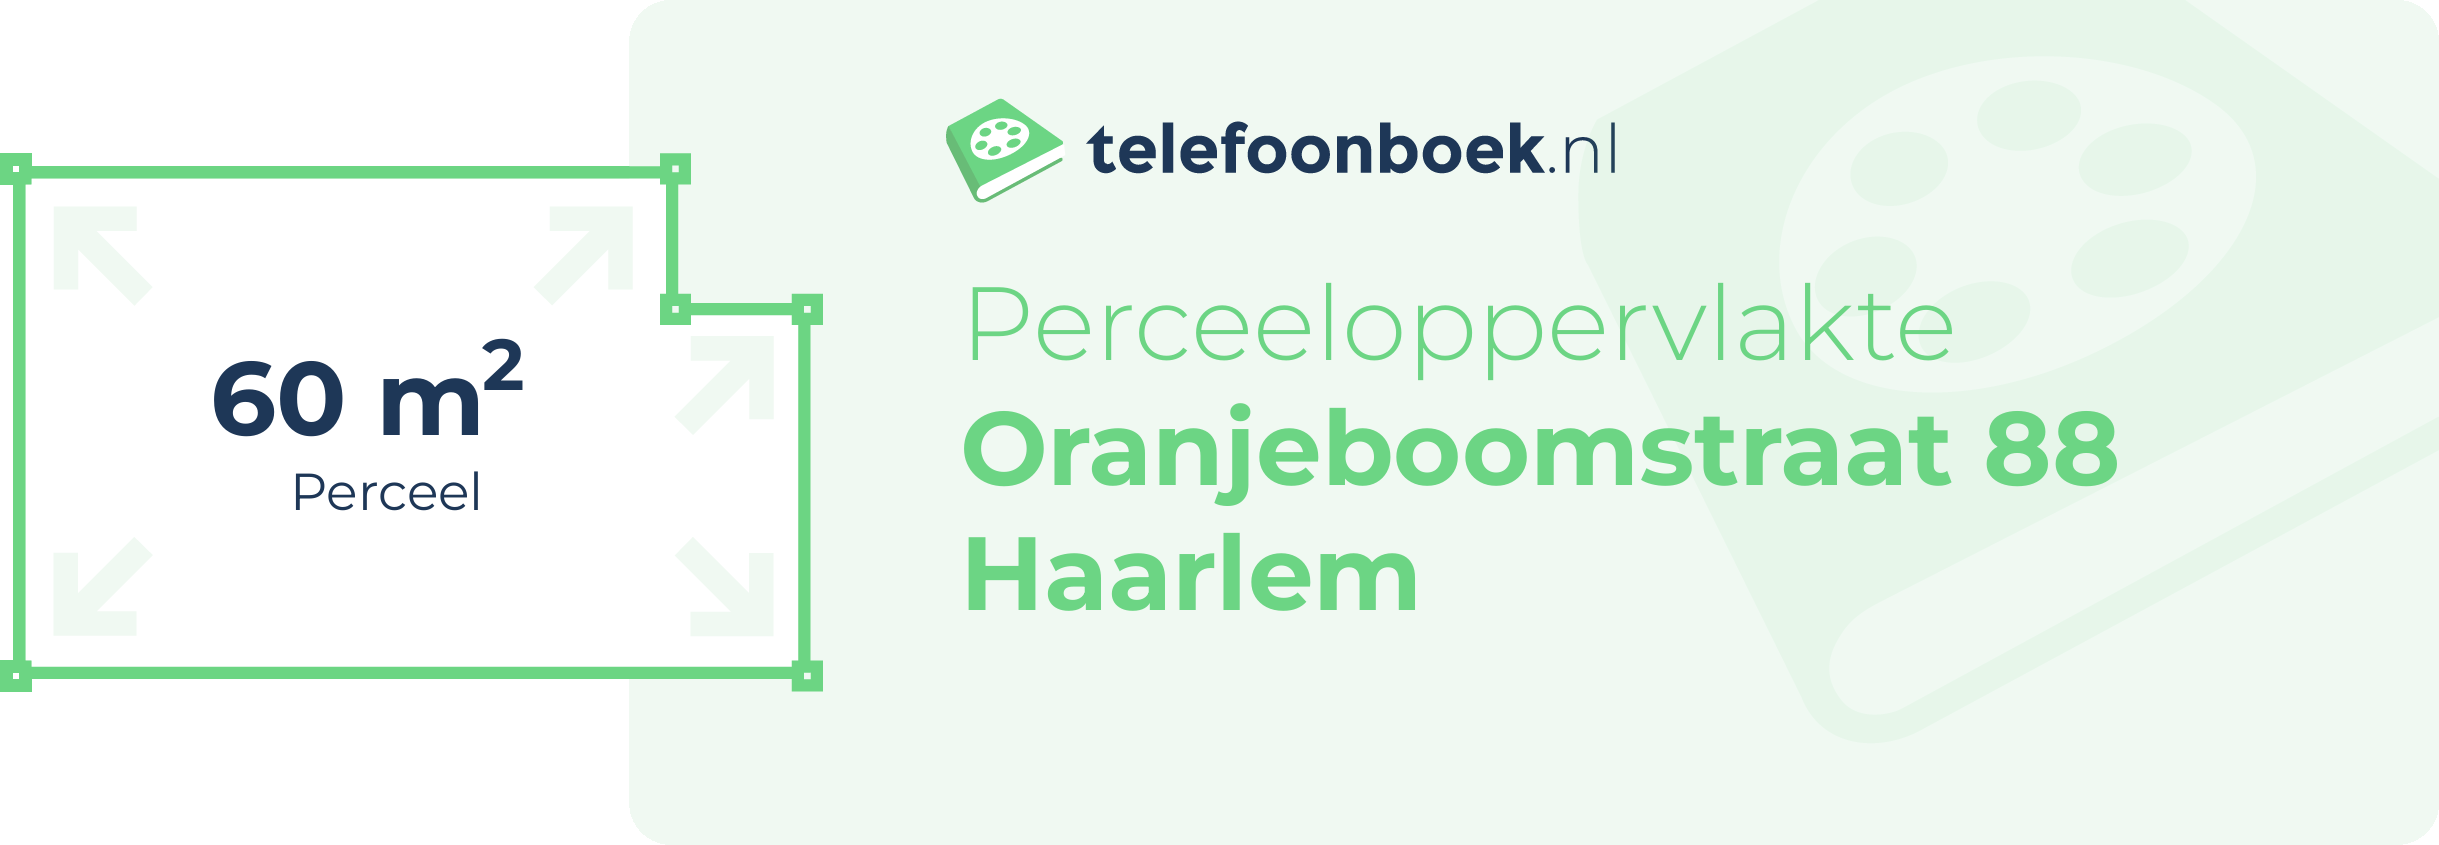 Perceeloppervlakte Oranjeboomstraat 88 Haarlem